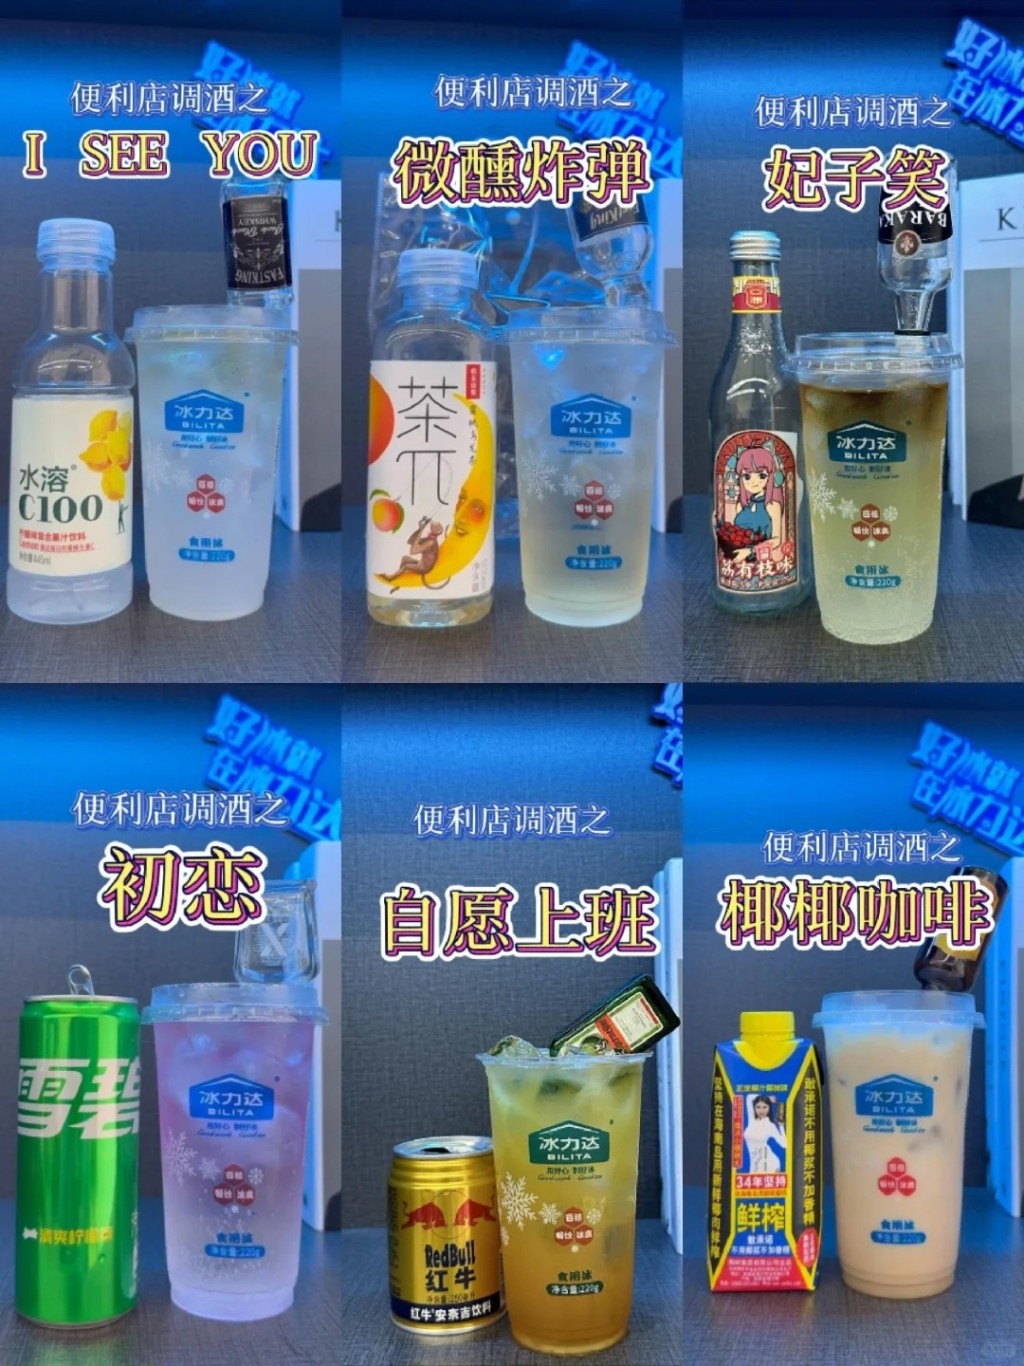 內地社交平台有許多網民分享用「冰杯」調製消暑飲品的方法。